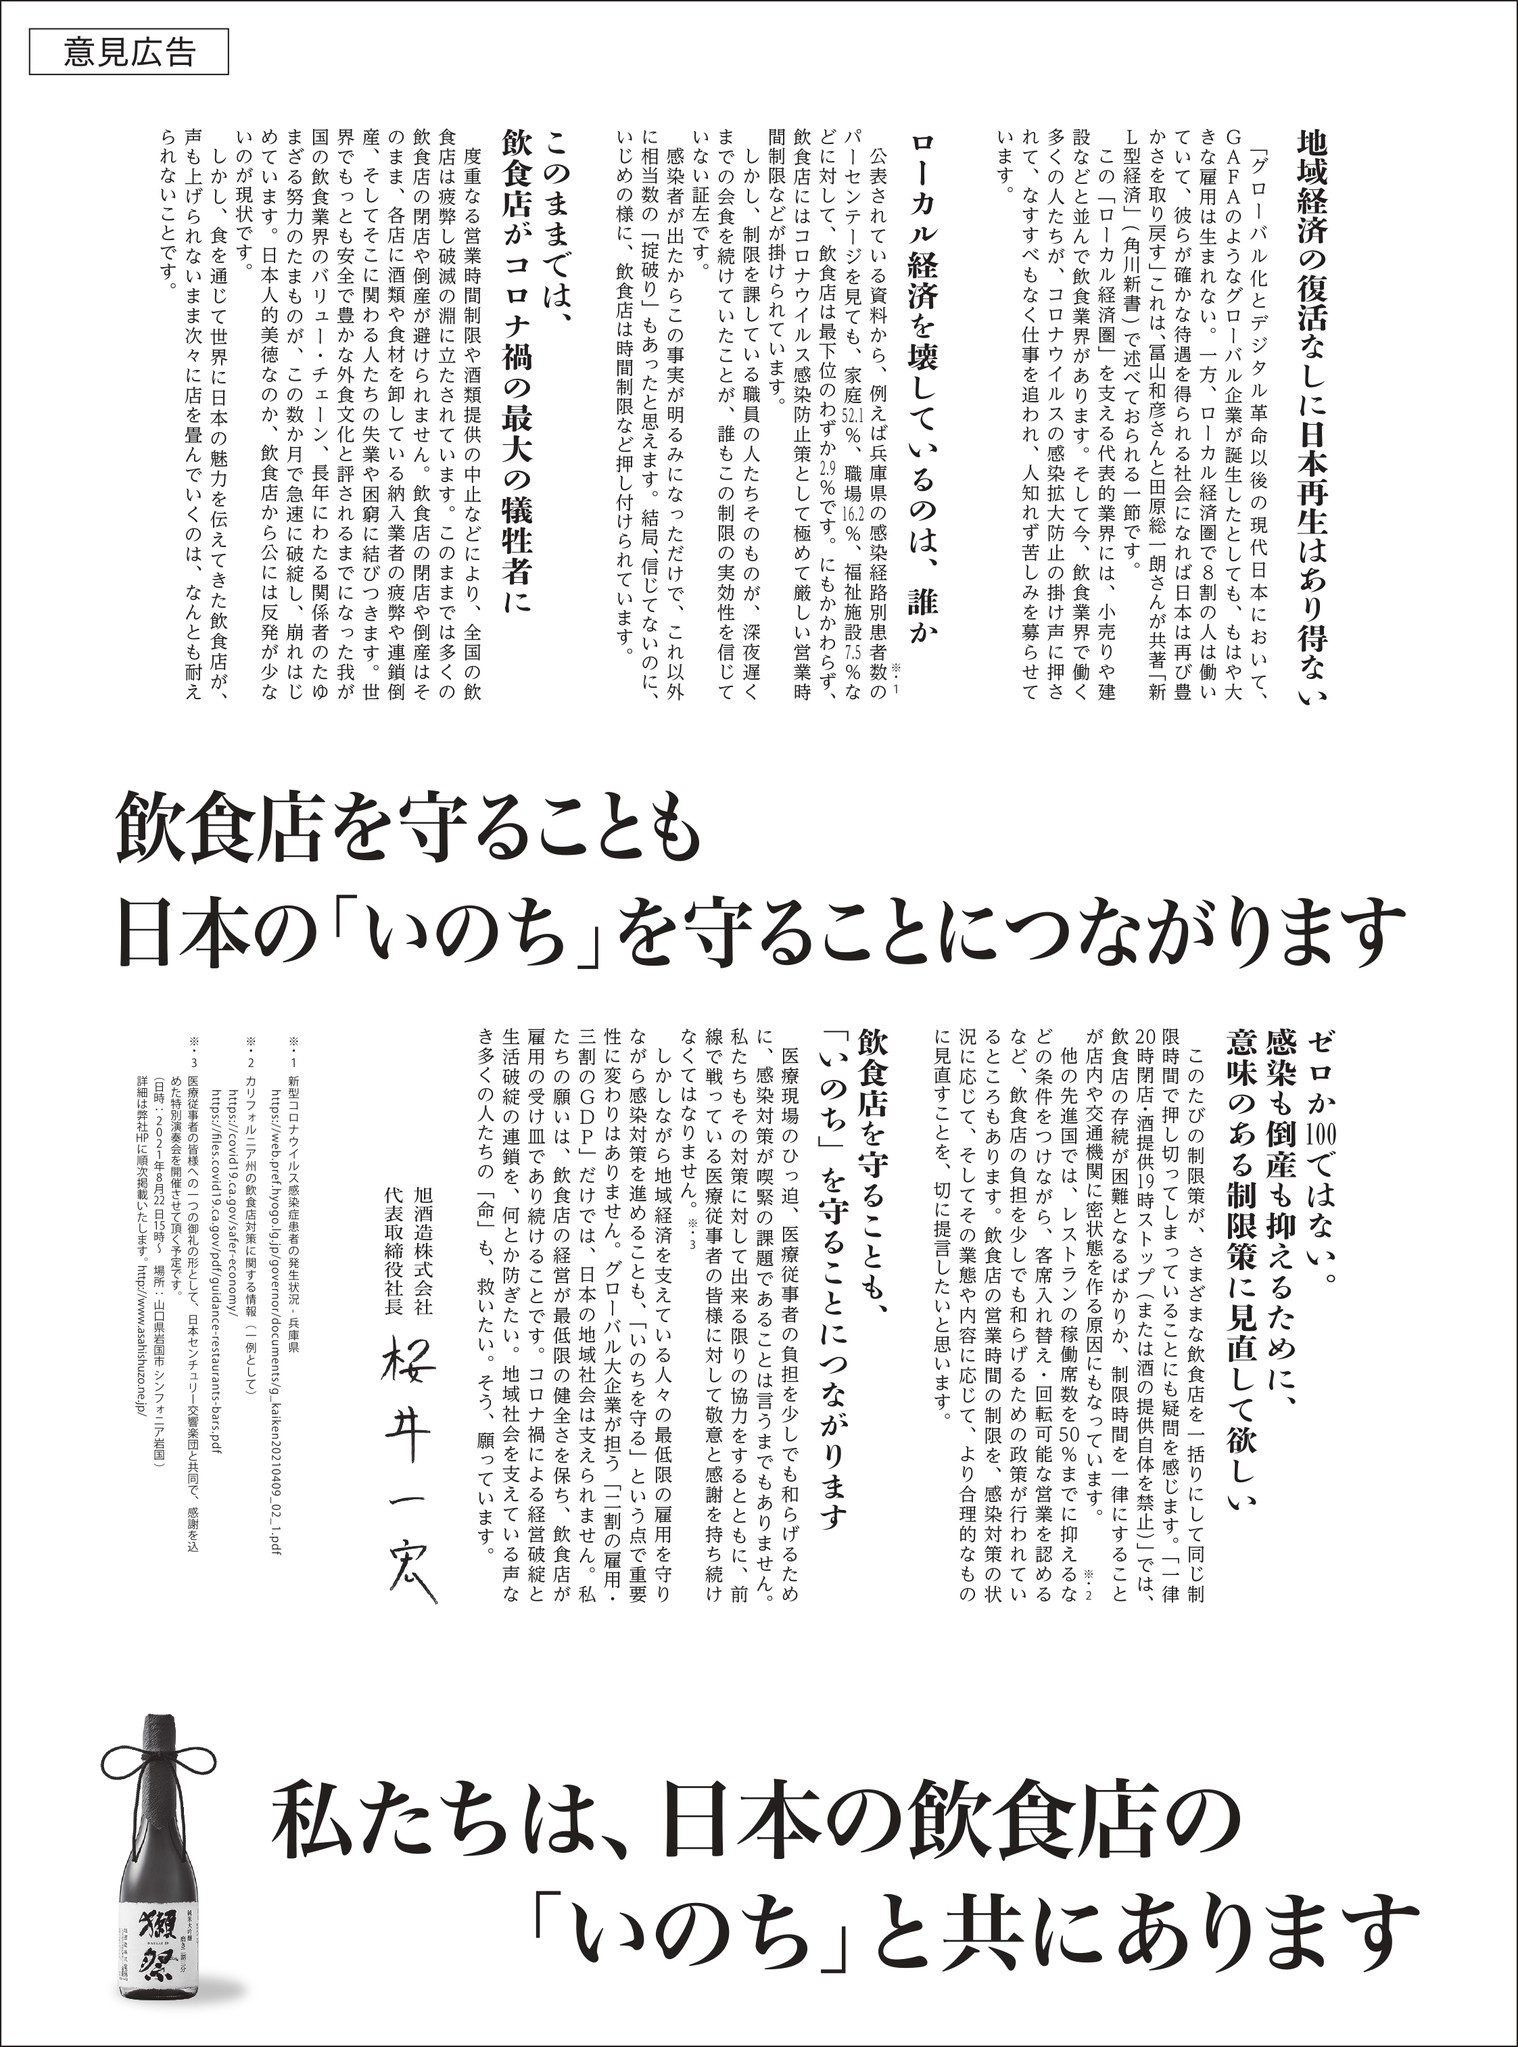 【5/24(月）企業広告】「獺祭」日本経済新聞に意見広告を掲載しました